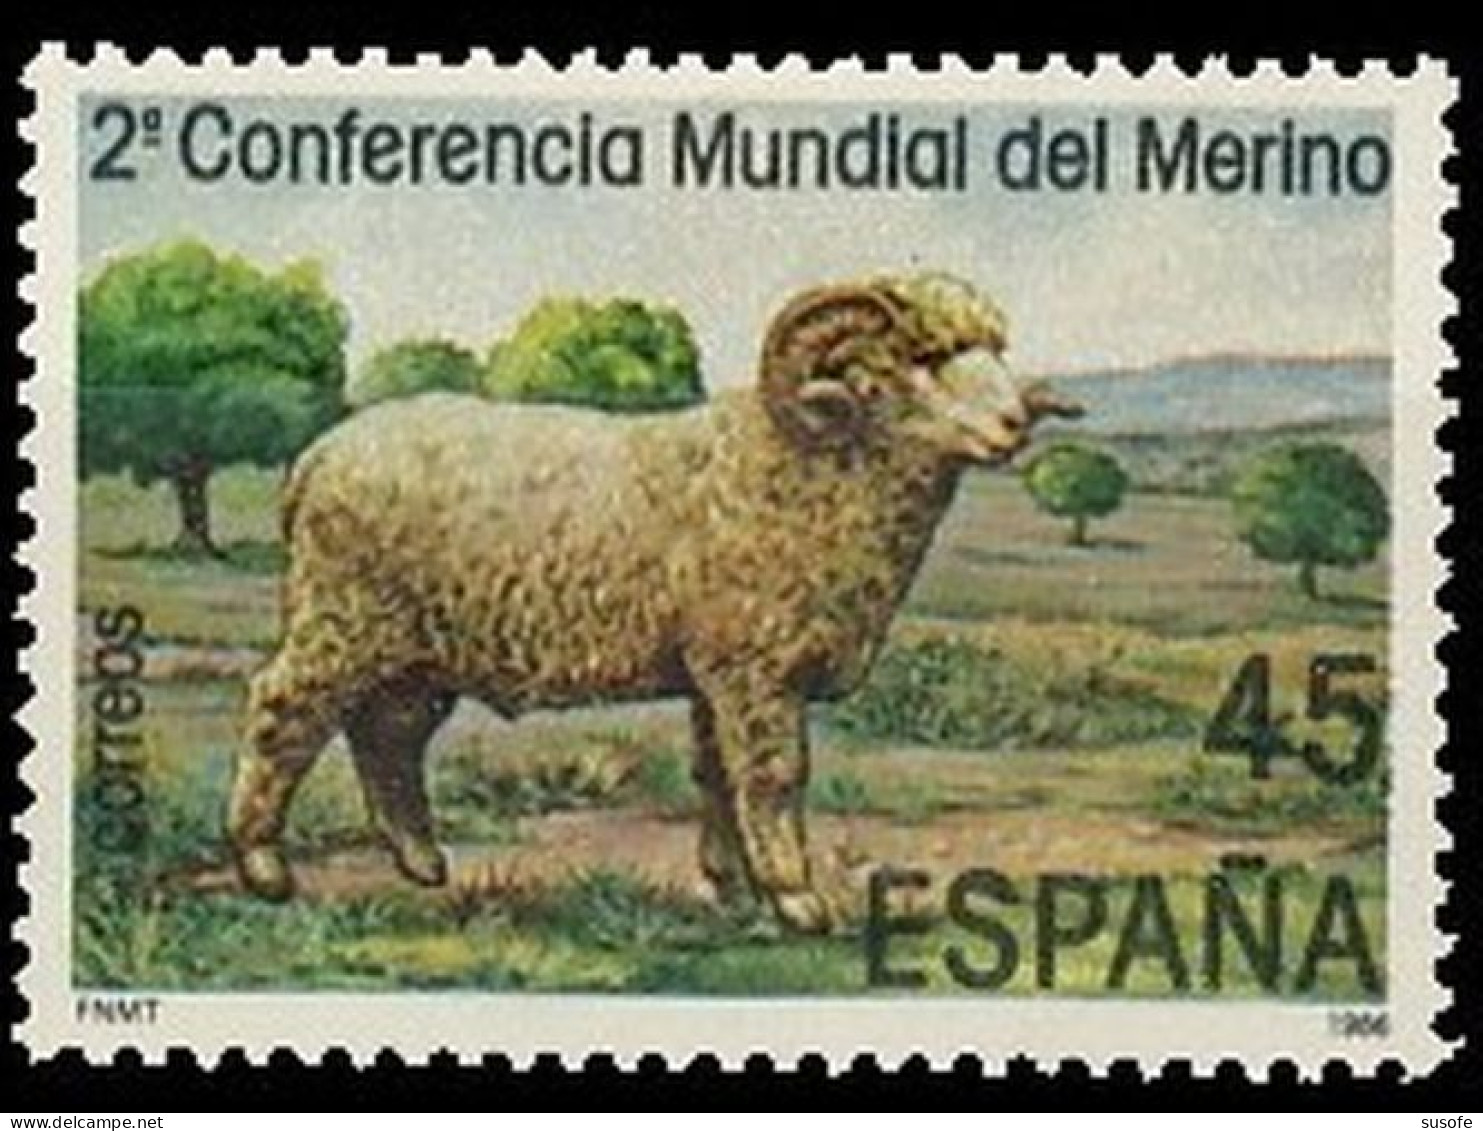 España 1986 Edifil 2839 Sello ** Conferencia Mundial Oveja Merina Michel 2716 Yvert 2450 Spain Stamp Timbre Espagne - Nuovi